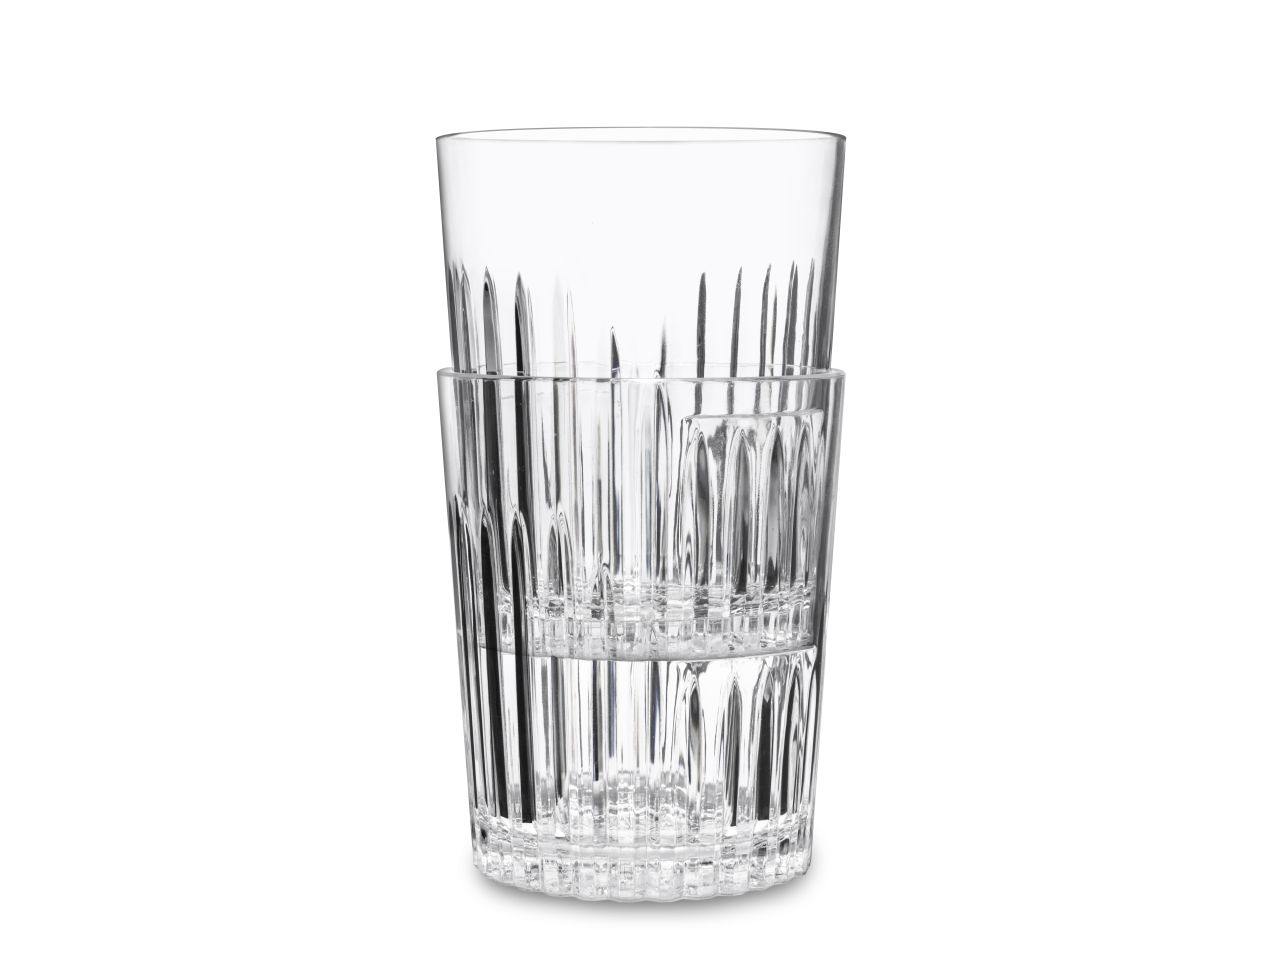 Waf bicchiere milano d.o.f. da 4ocl infrangibile in san trasparente , plastica  rigida, bpa-free , riutilizzabile